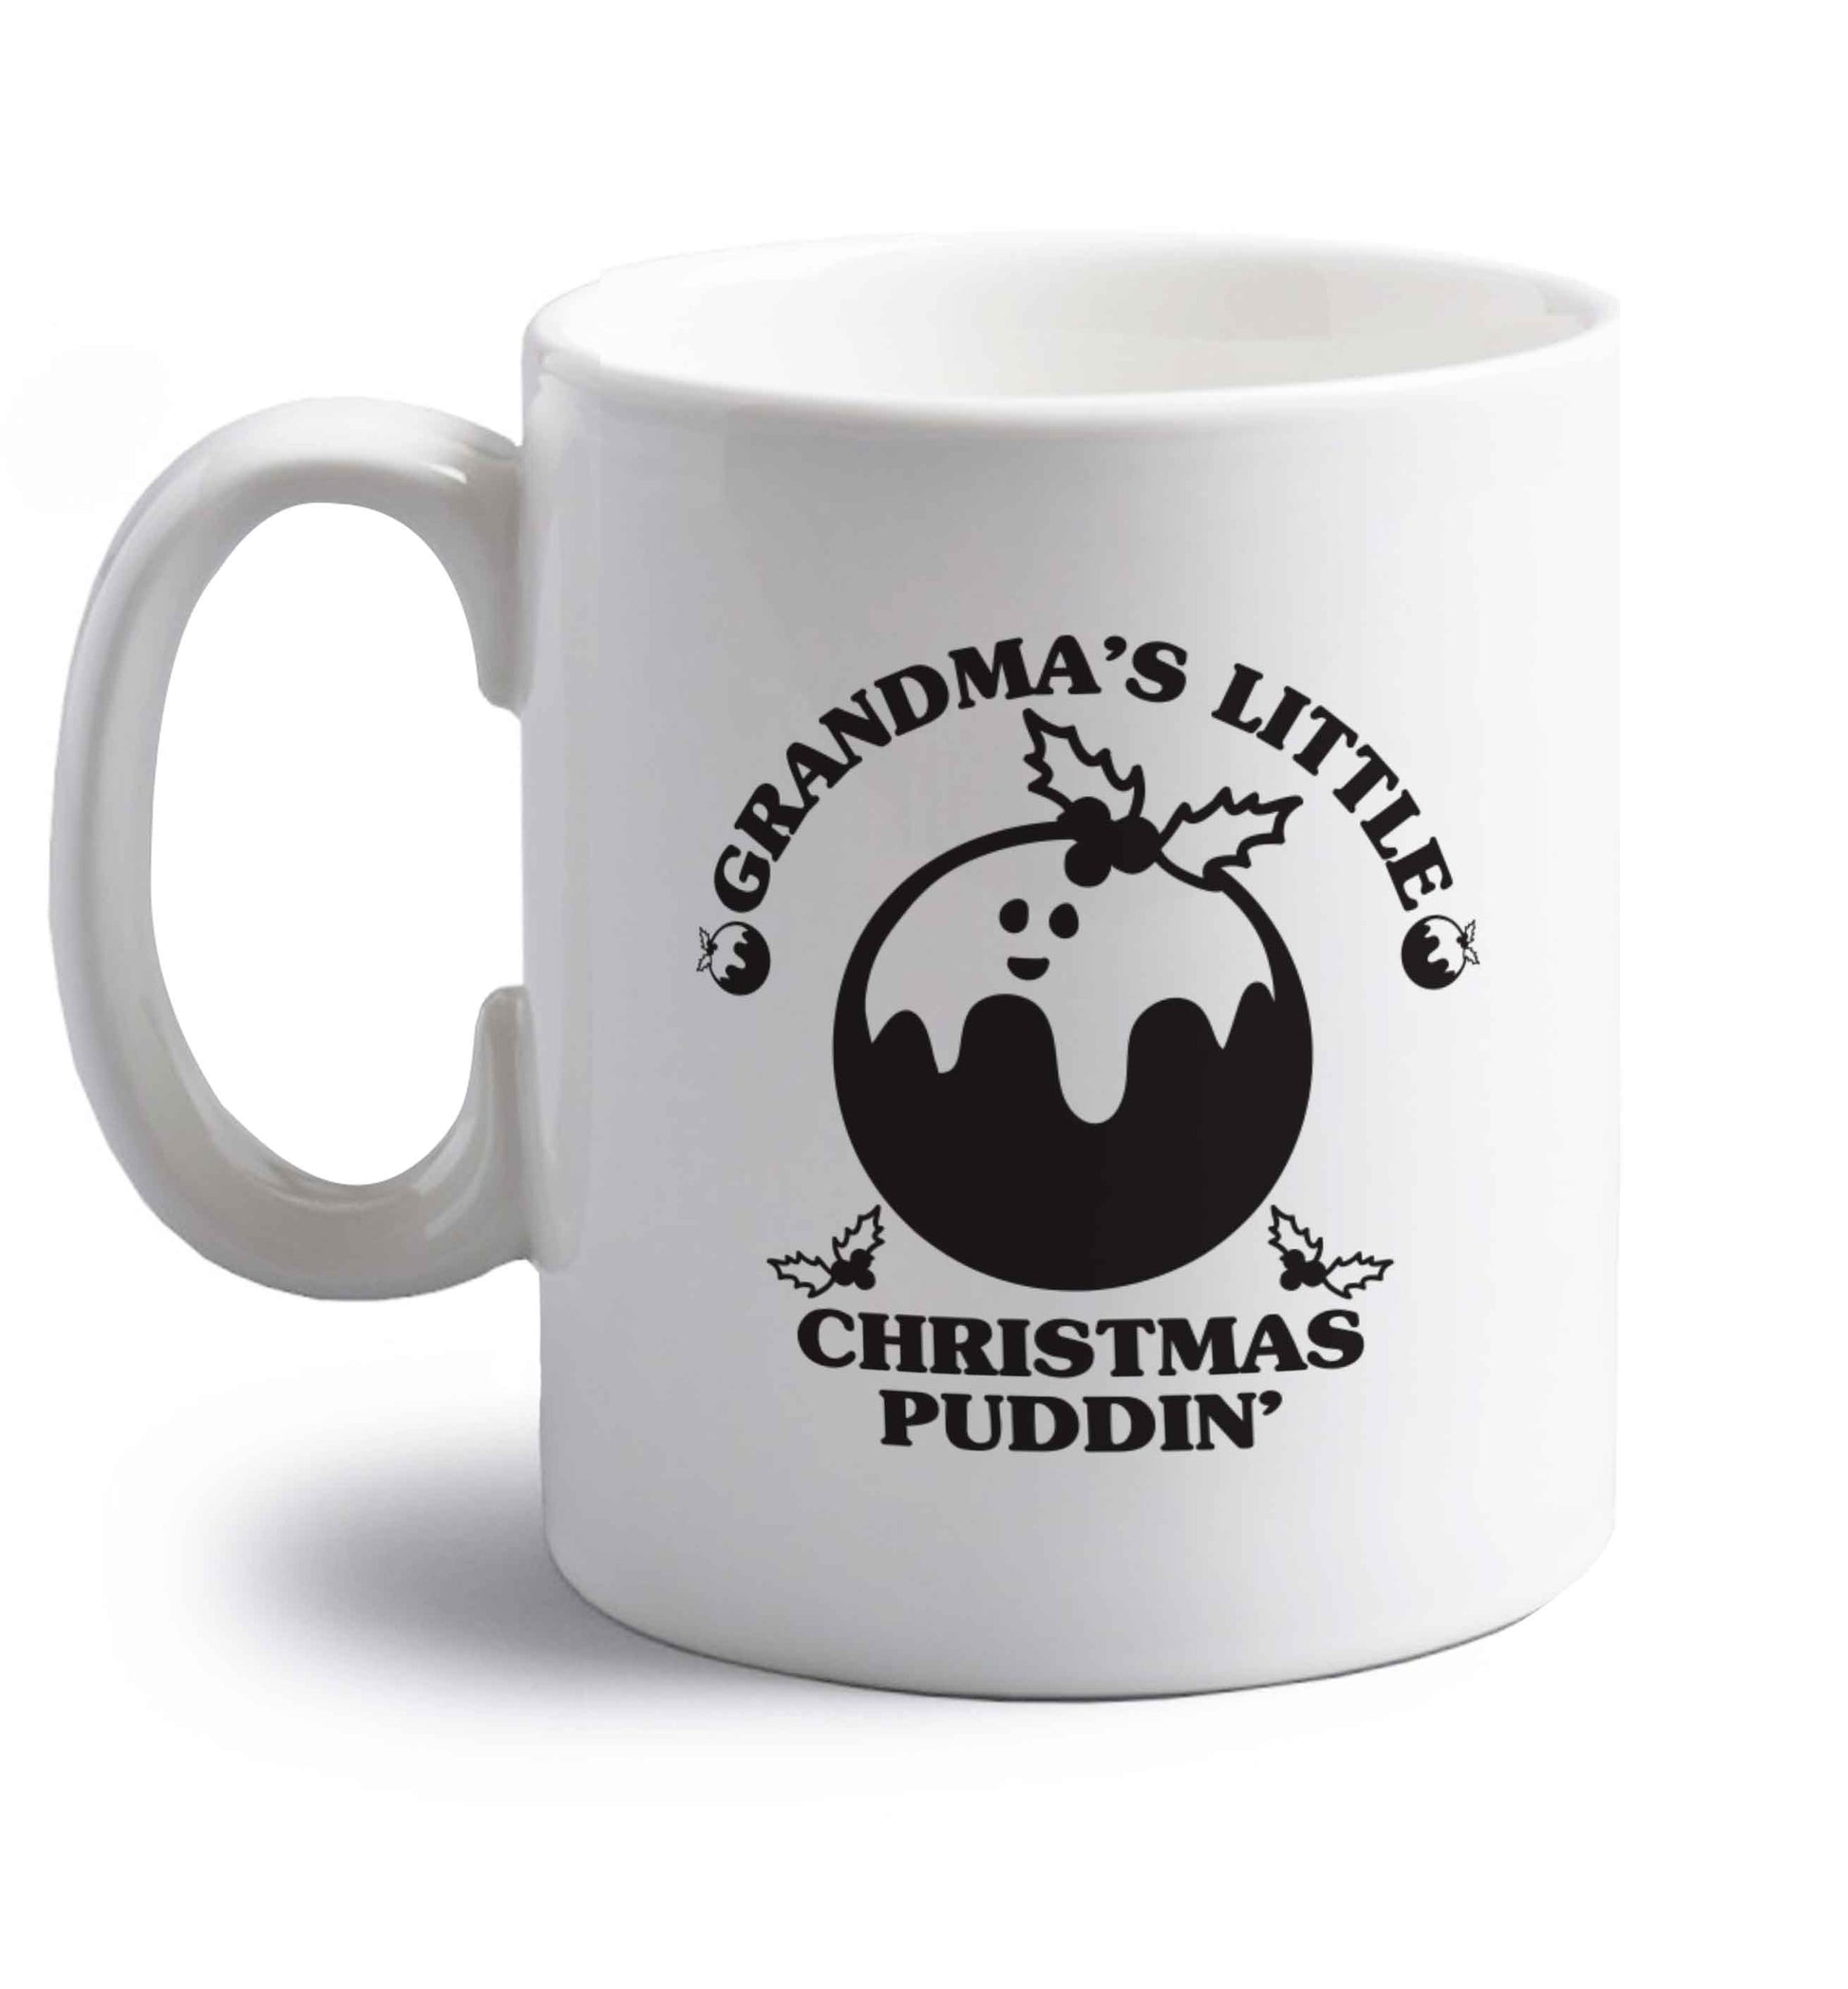 Grandma's little Christmas puddin' right handed white ceramic mug 